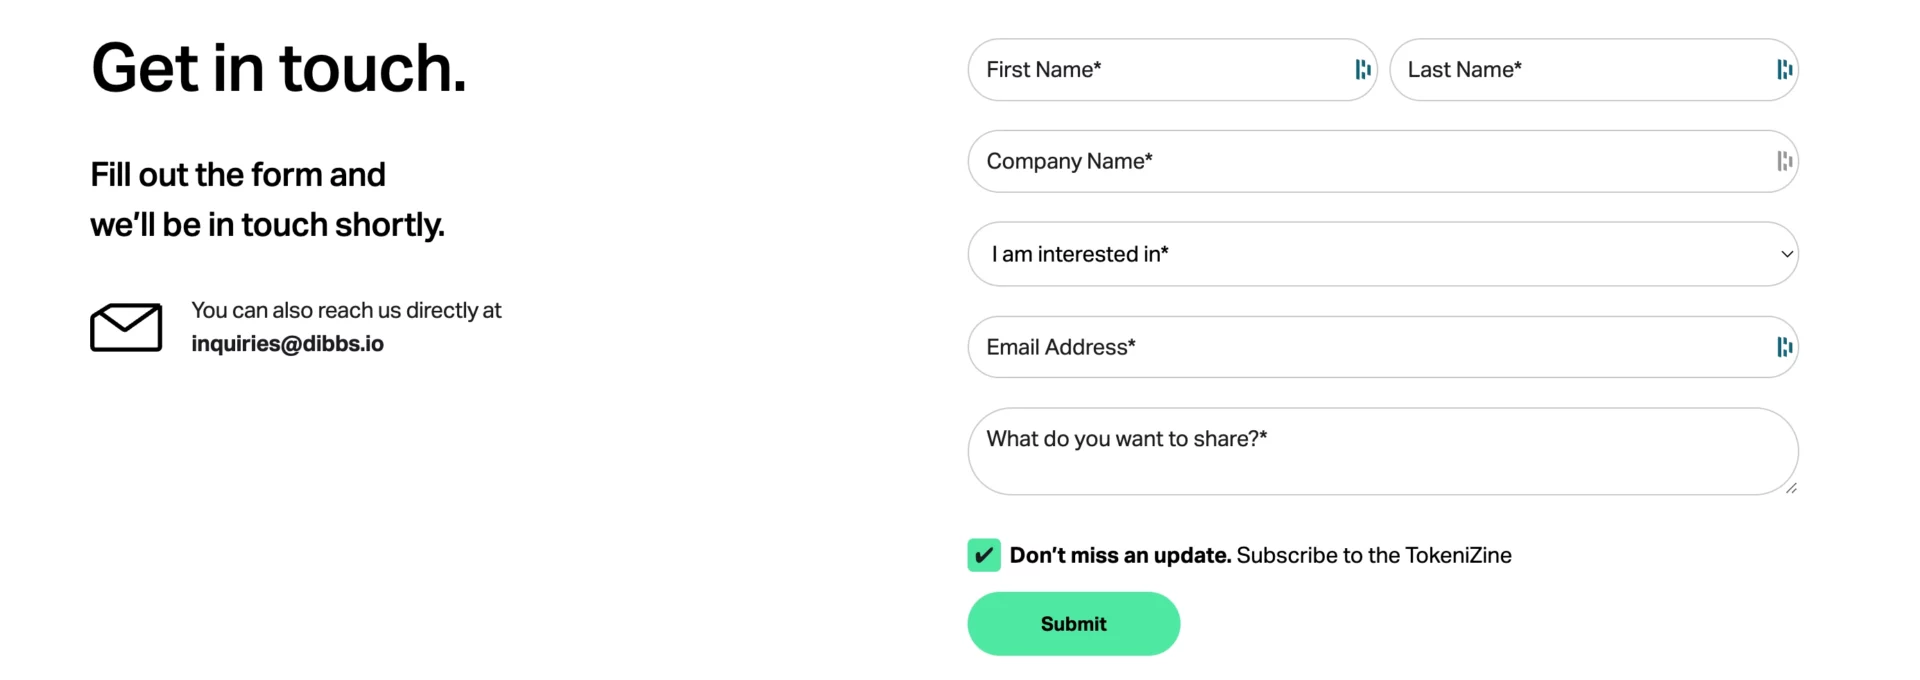 Formulário tradicional para consultas de usuários